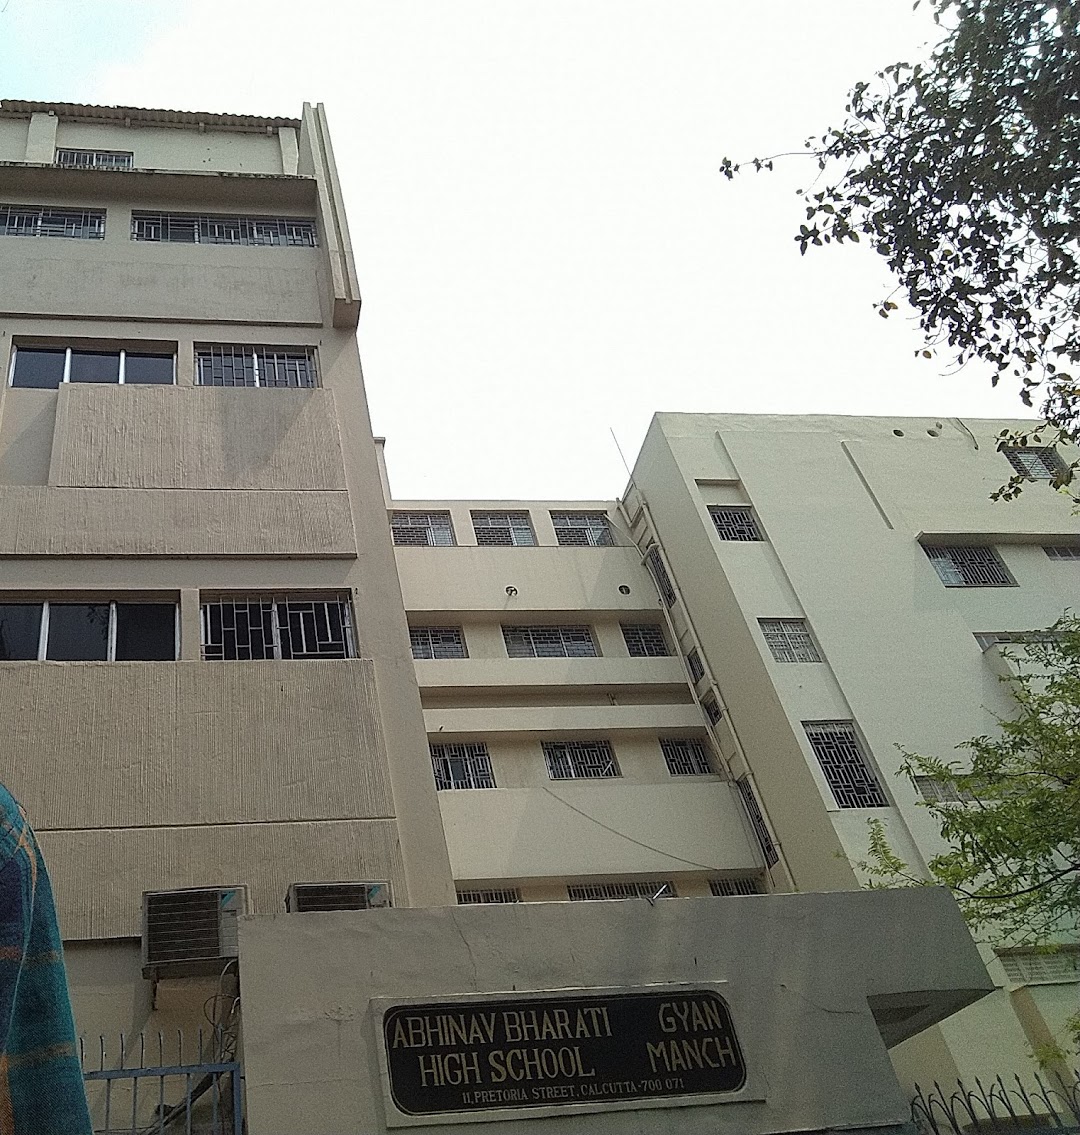 Abhinav Bharati high school